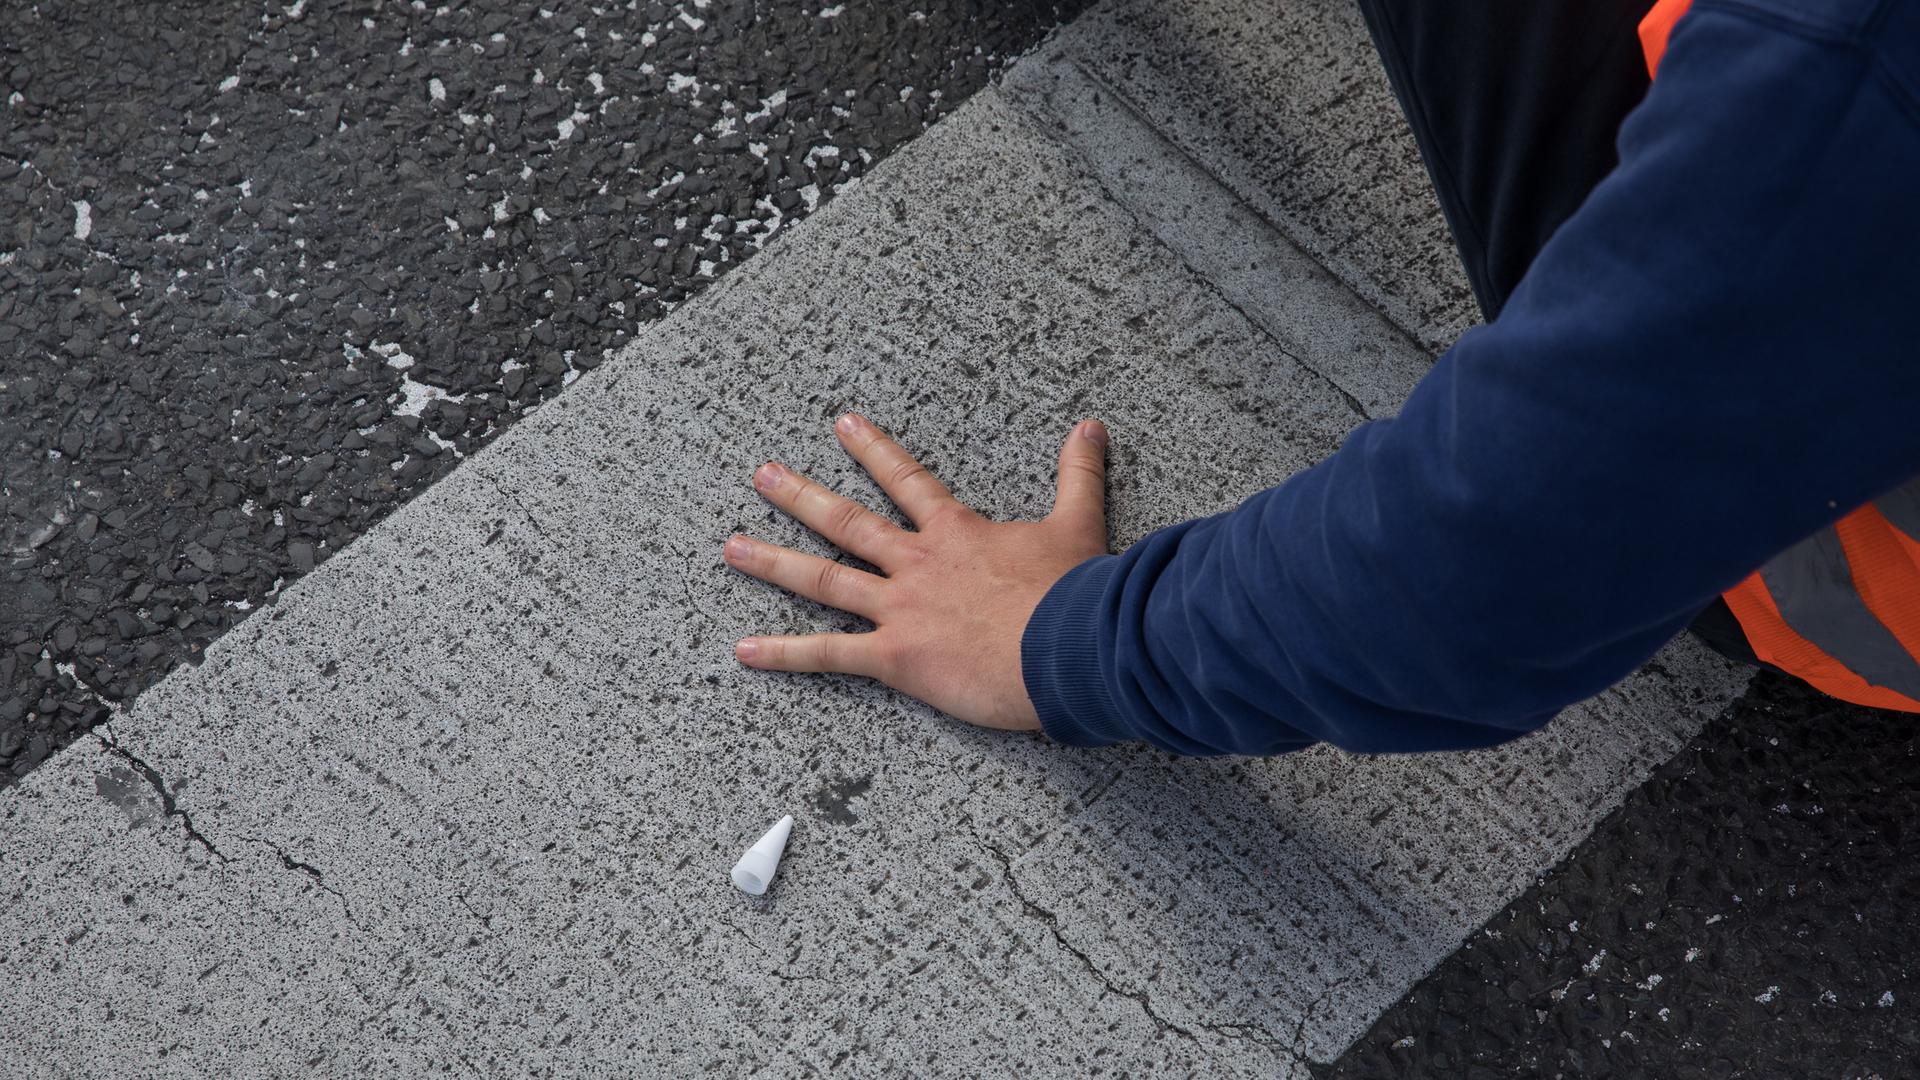 Ein Aktivist der Gruppe "Letzte Generation" hat seine linke Hand auf eine Straße geklebt, um diese zu blockieren.